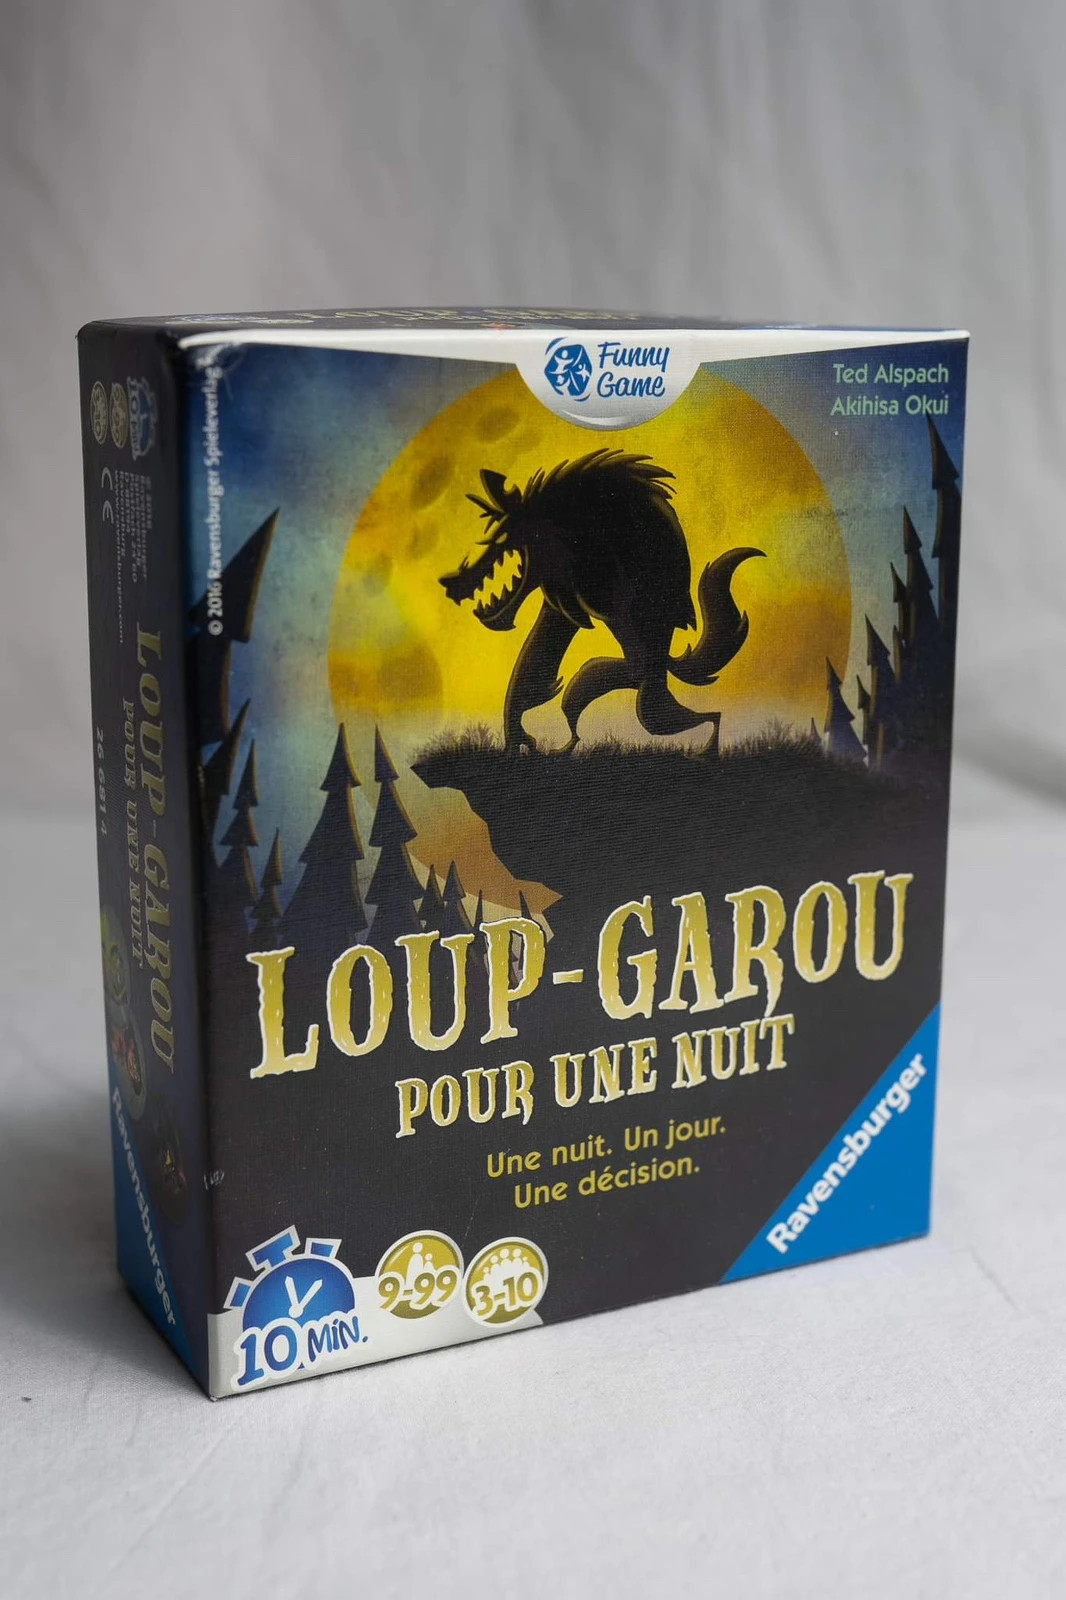 Loup-Garou pour un Crépuscule, Jeux d'ambiance, Jeux de société, Produits